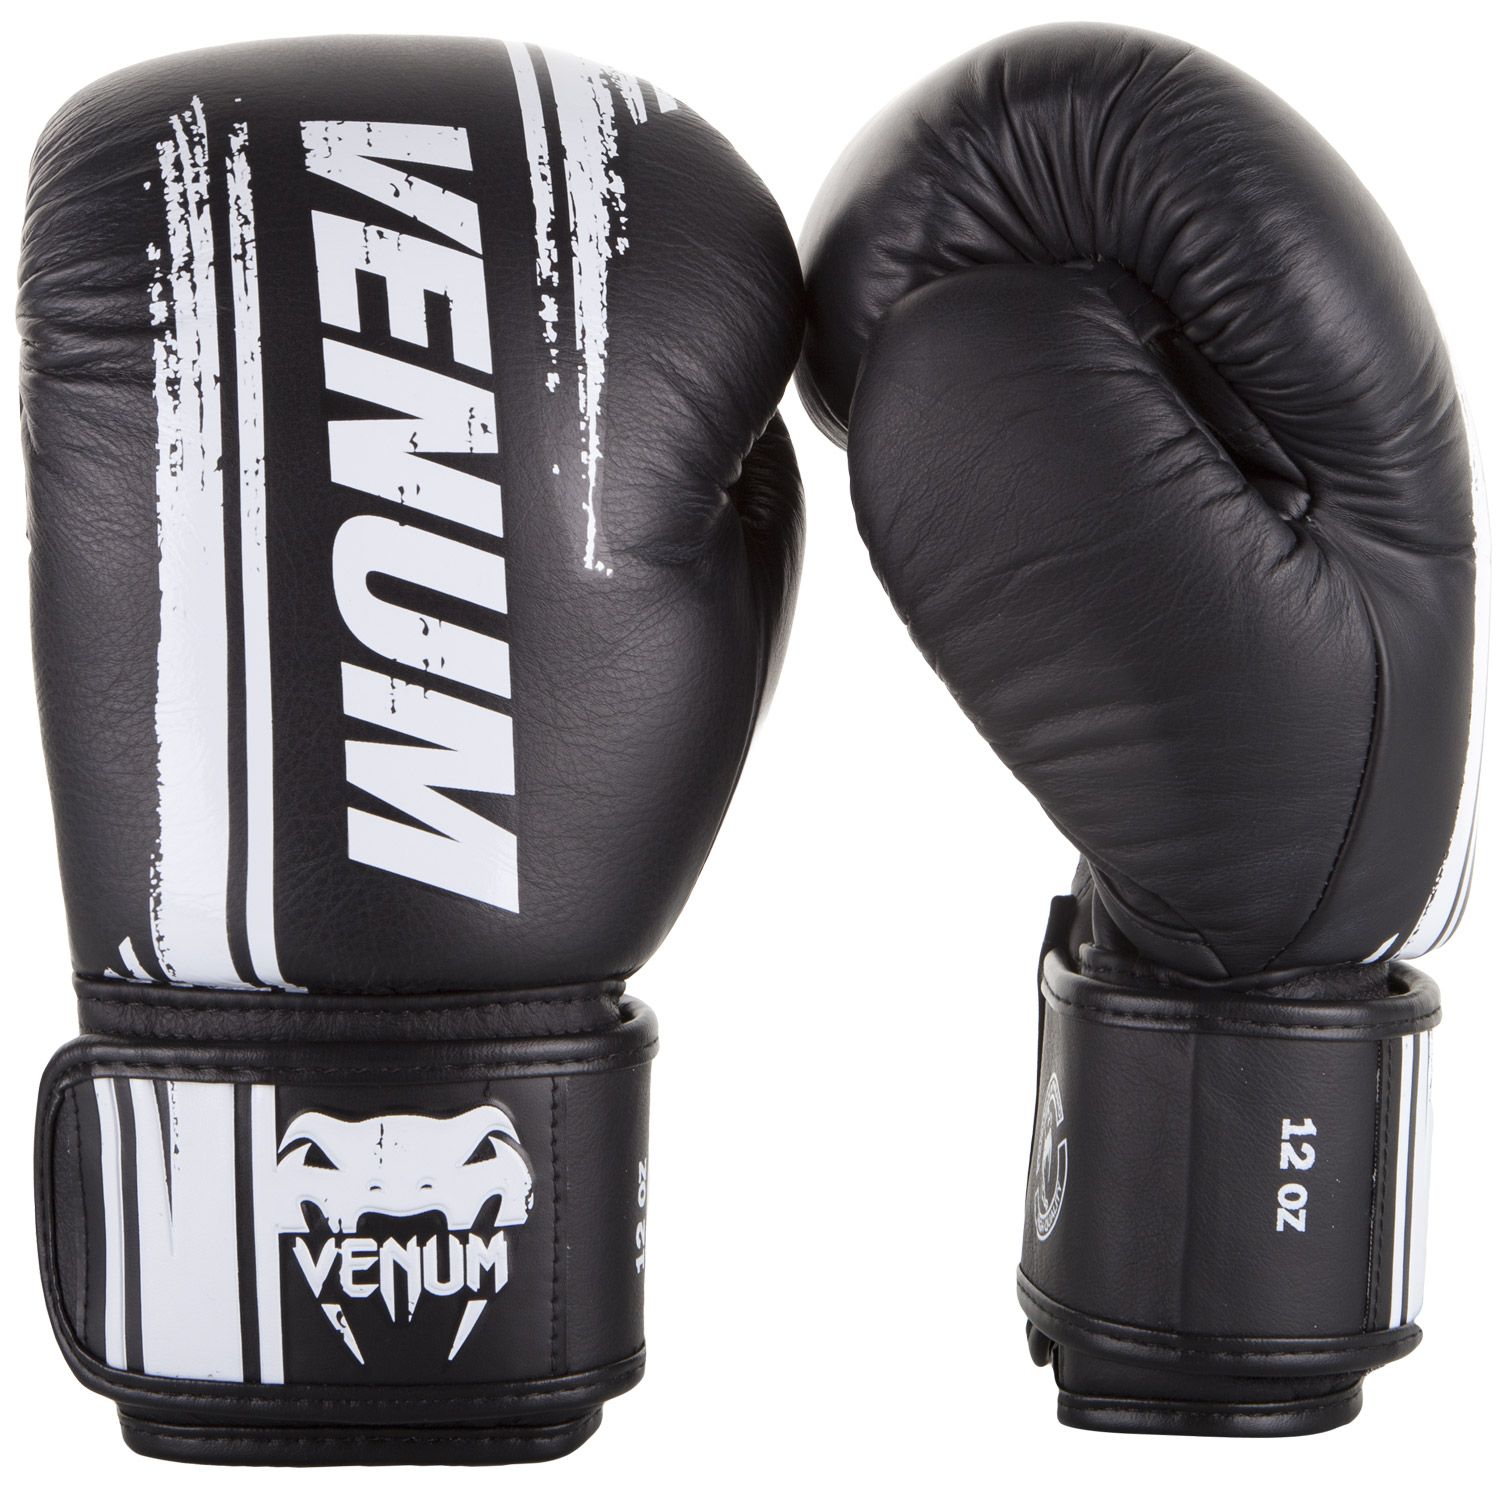 Boxerské rukavice Bangkok Spirit - kůže Nappa černé VENUM vel. 12 oz